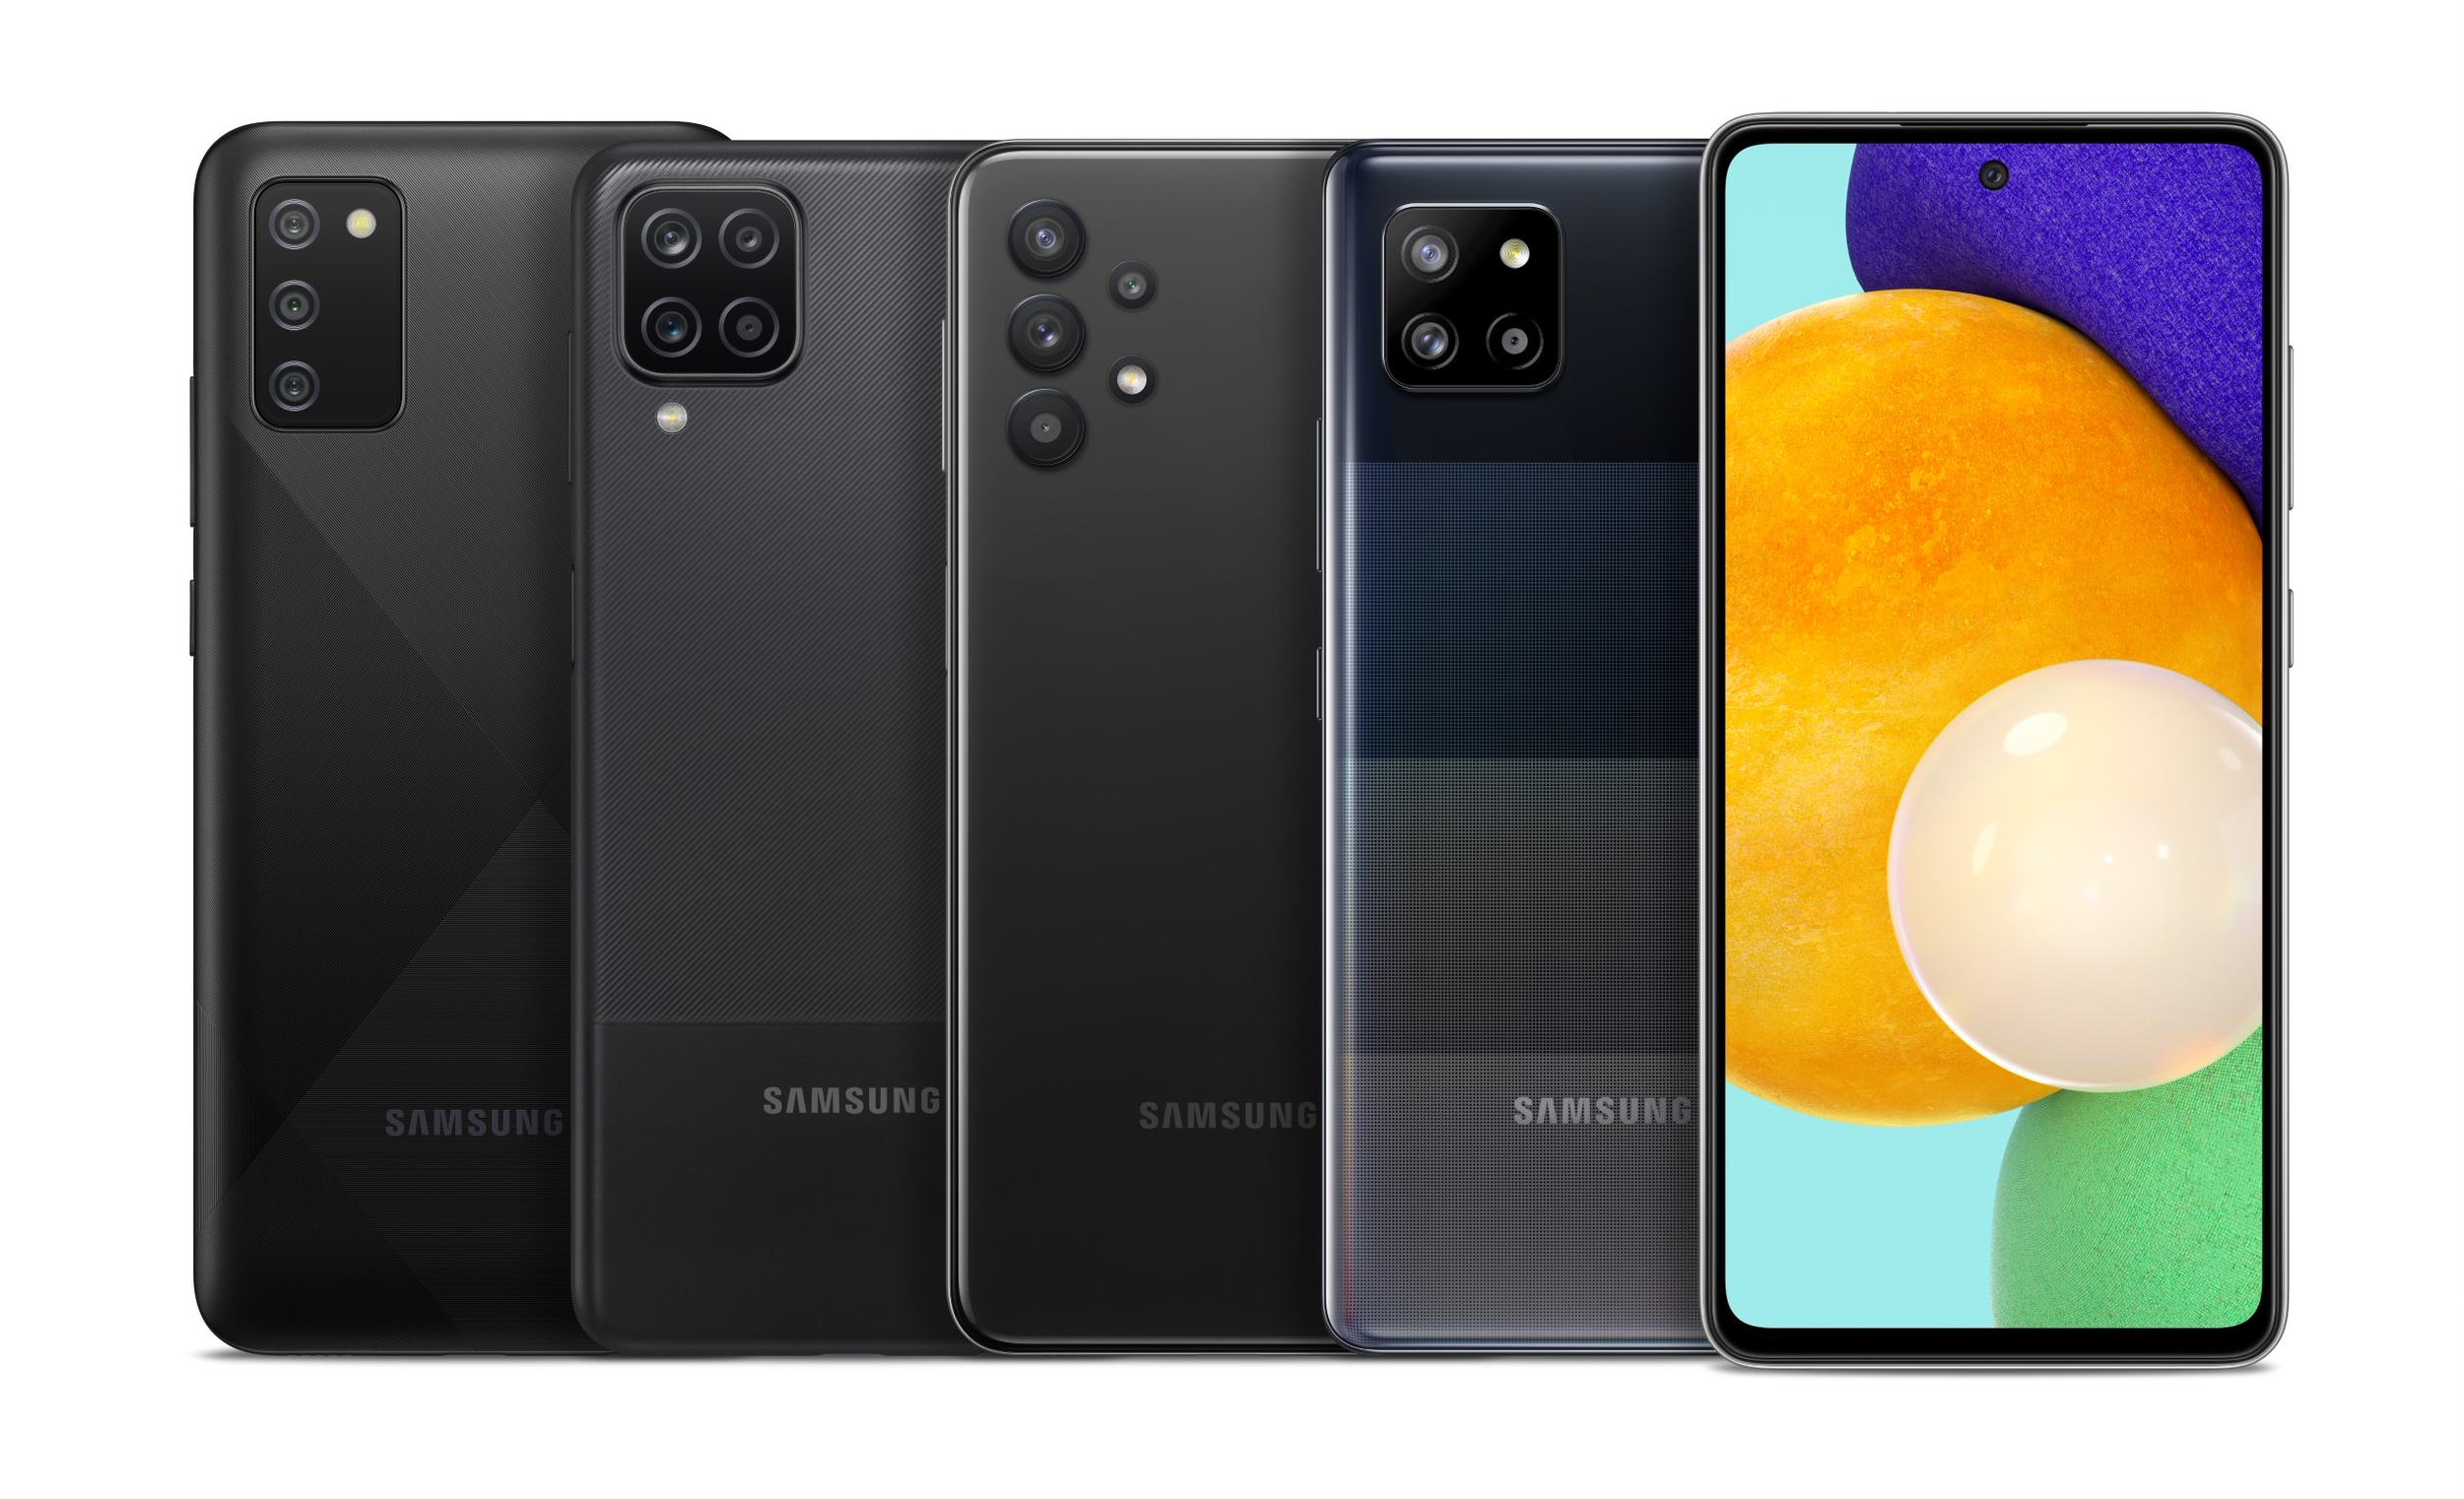 Źródło: Samsung wprowadzi 64 nowe modele smartfonów i tabletów w 2022 roku, 20 z nich napędzanych przez układy Exynos z grafiką AMD